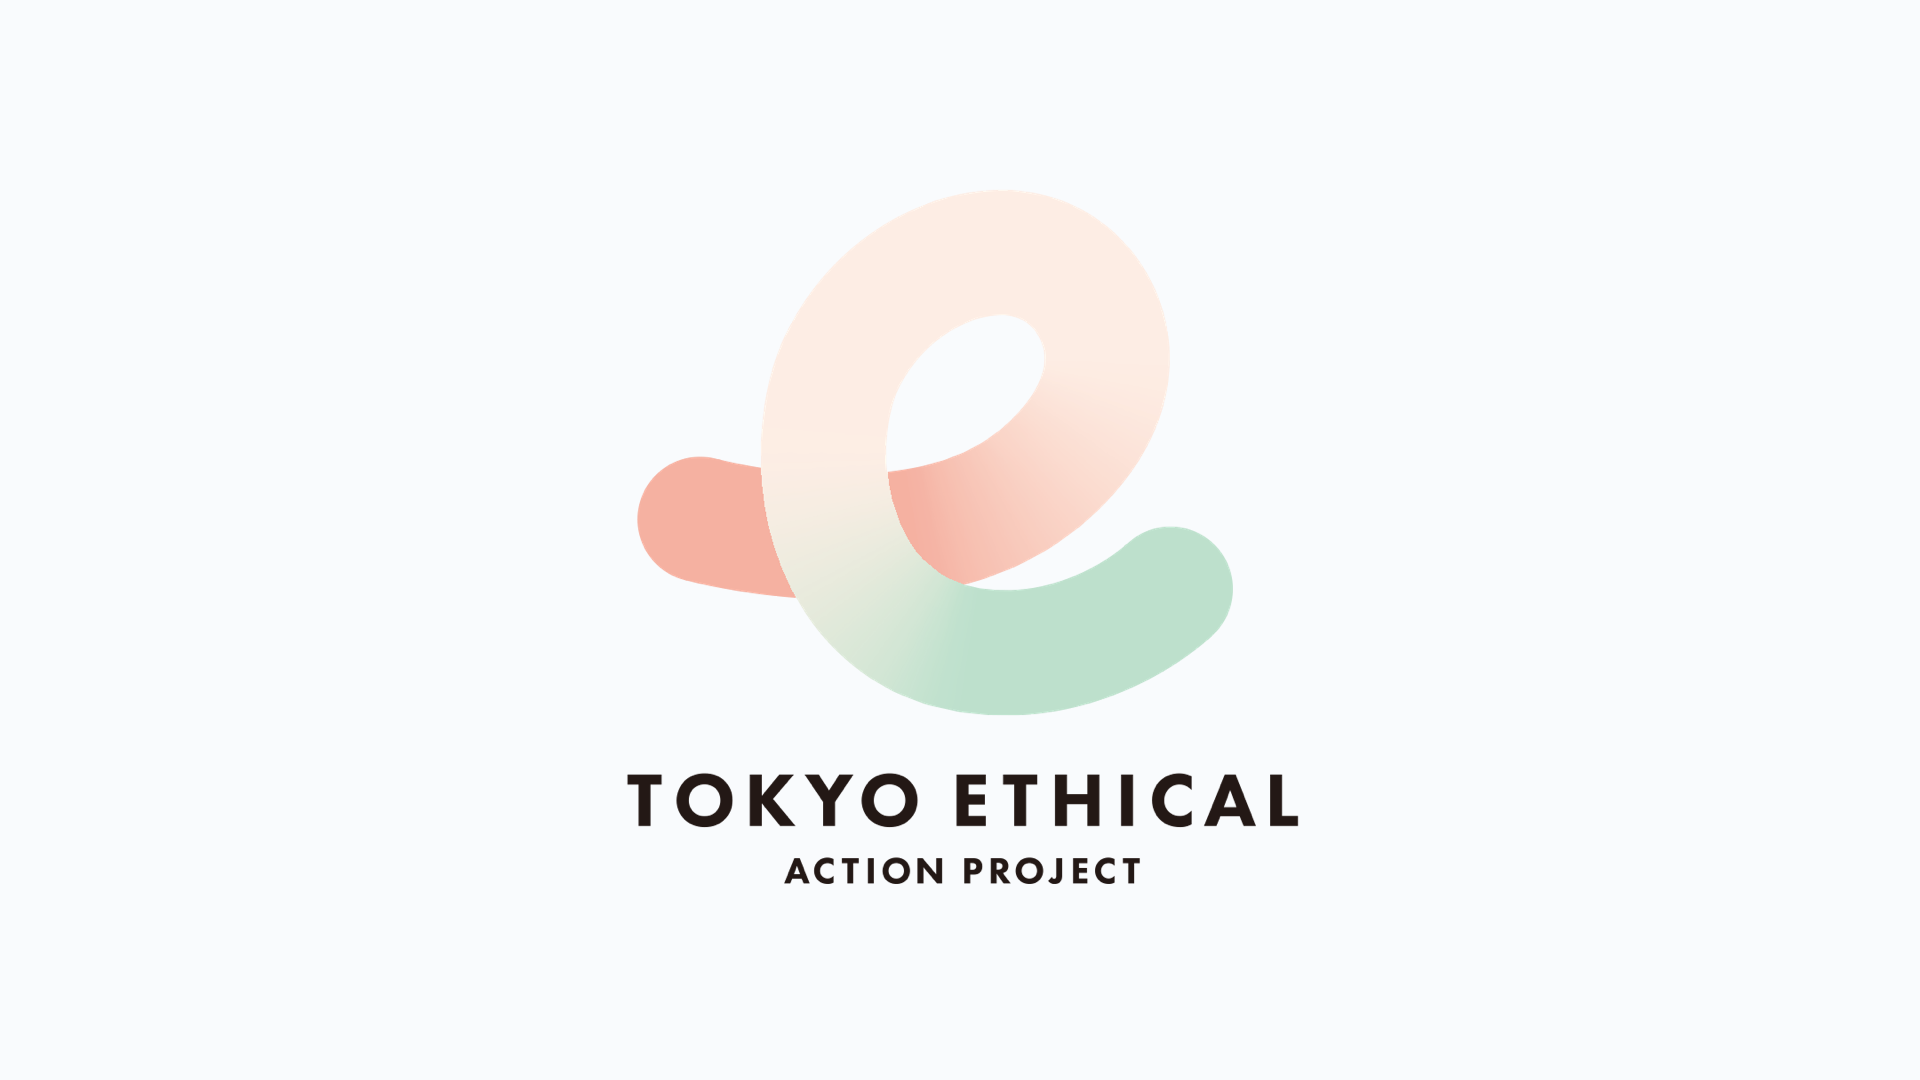 【プレスリリース】 東京都が主催する「東京エシカル」へ参画